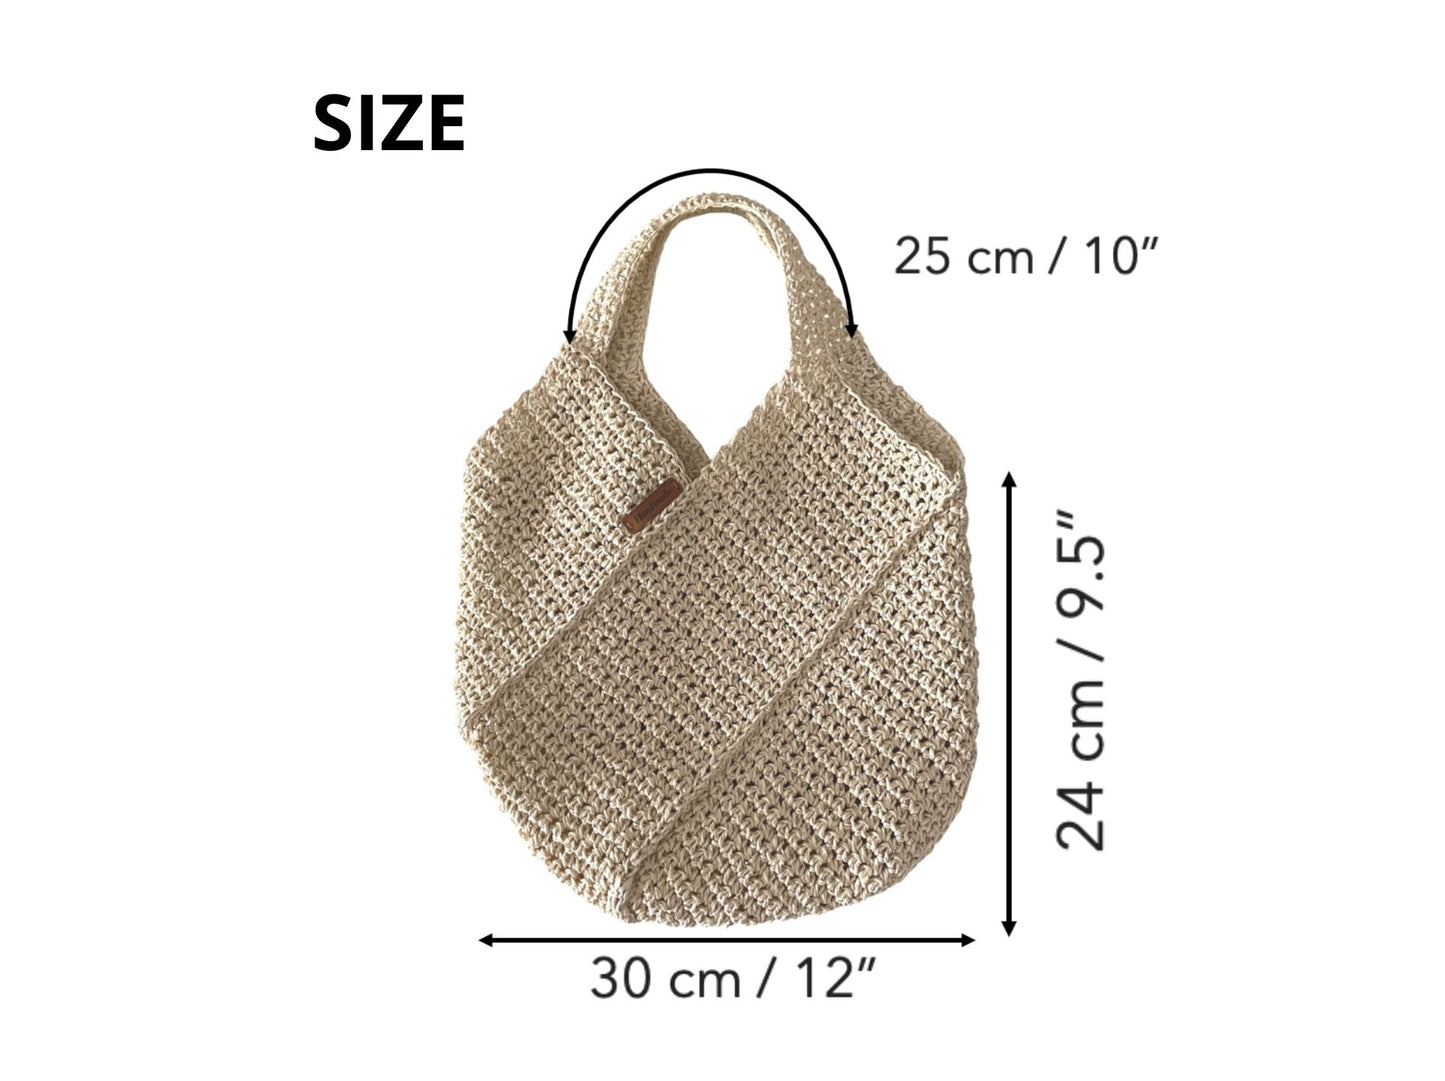 Diagonal Shopper Bag Crochet Pattern